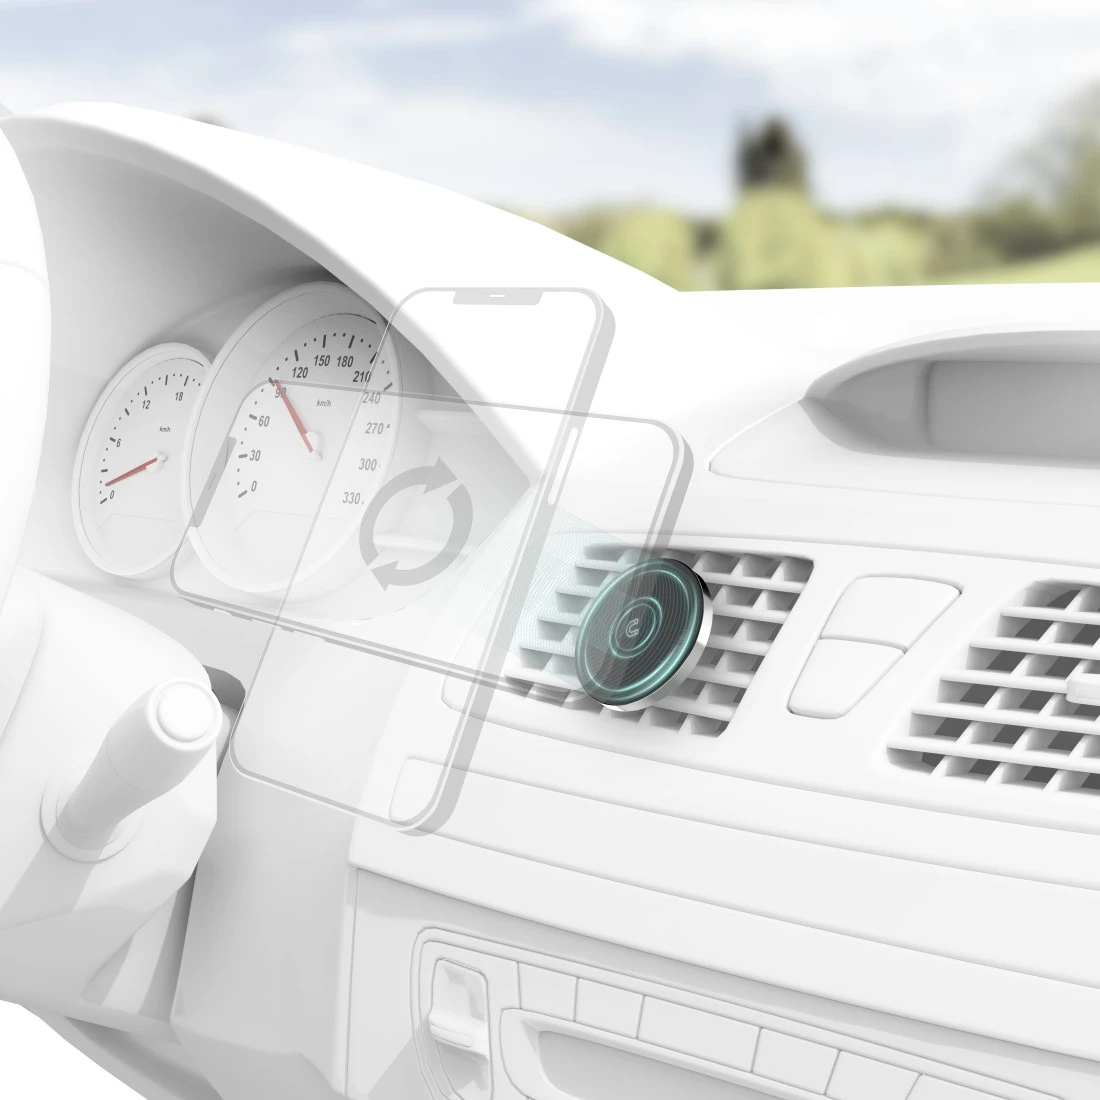 Hama Smartphone-Halterung »Auto Handyhalterung Magnet mit